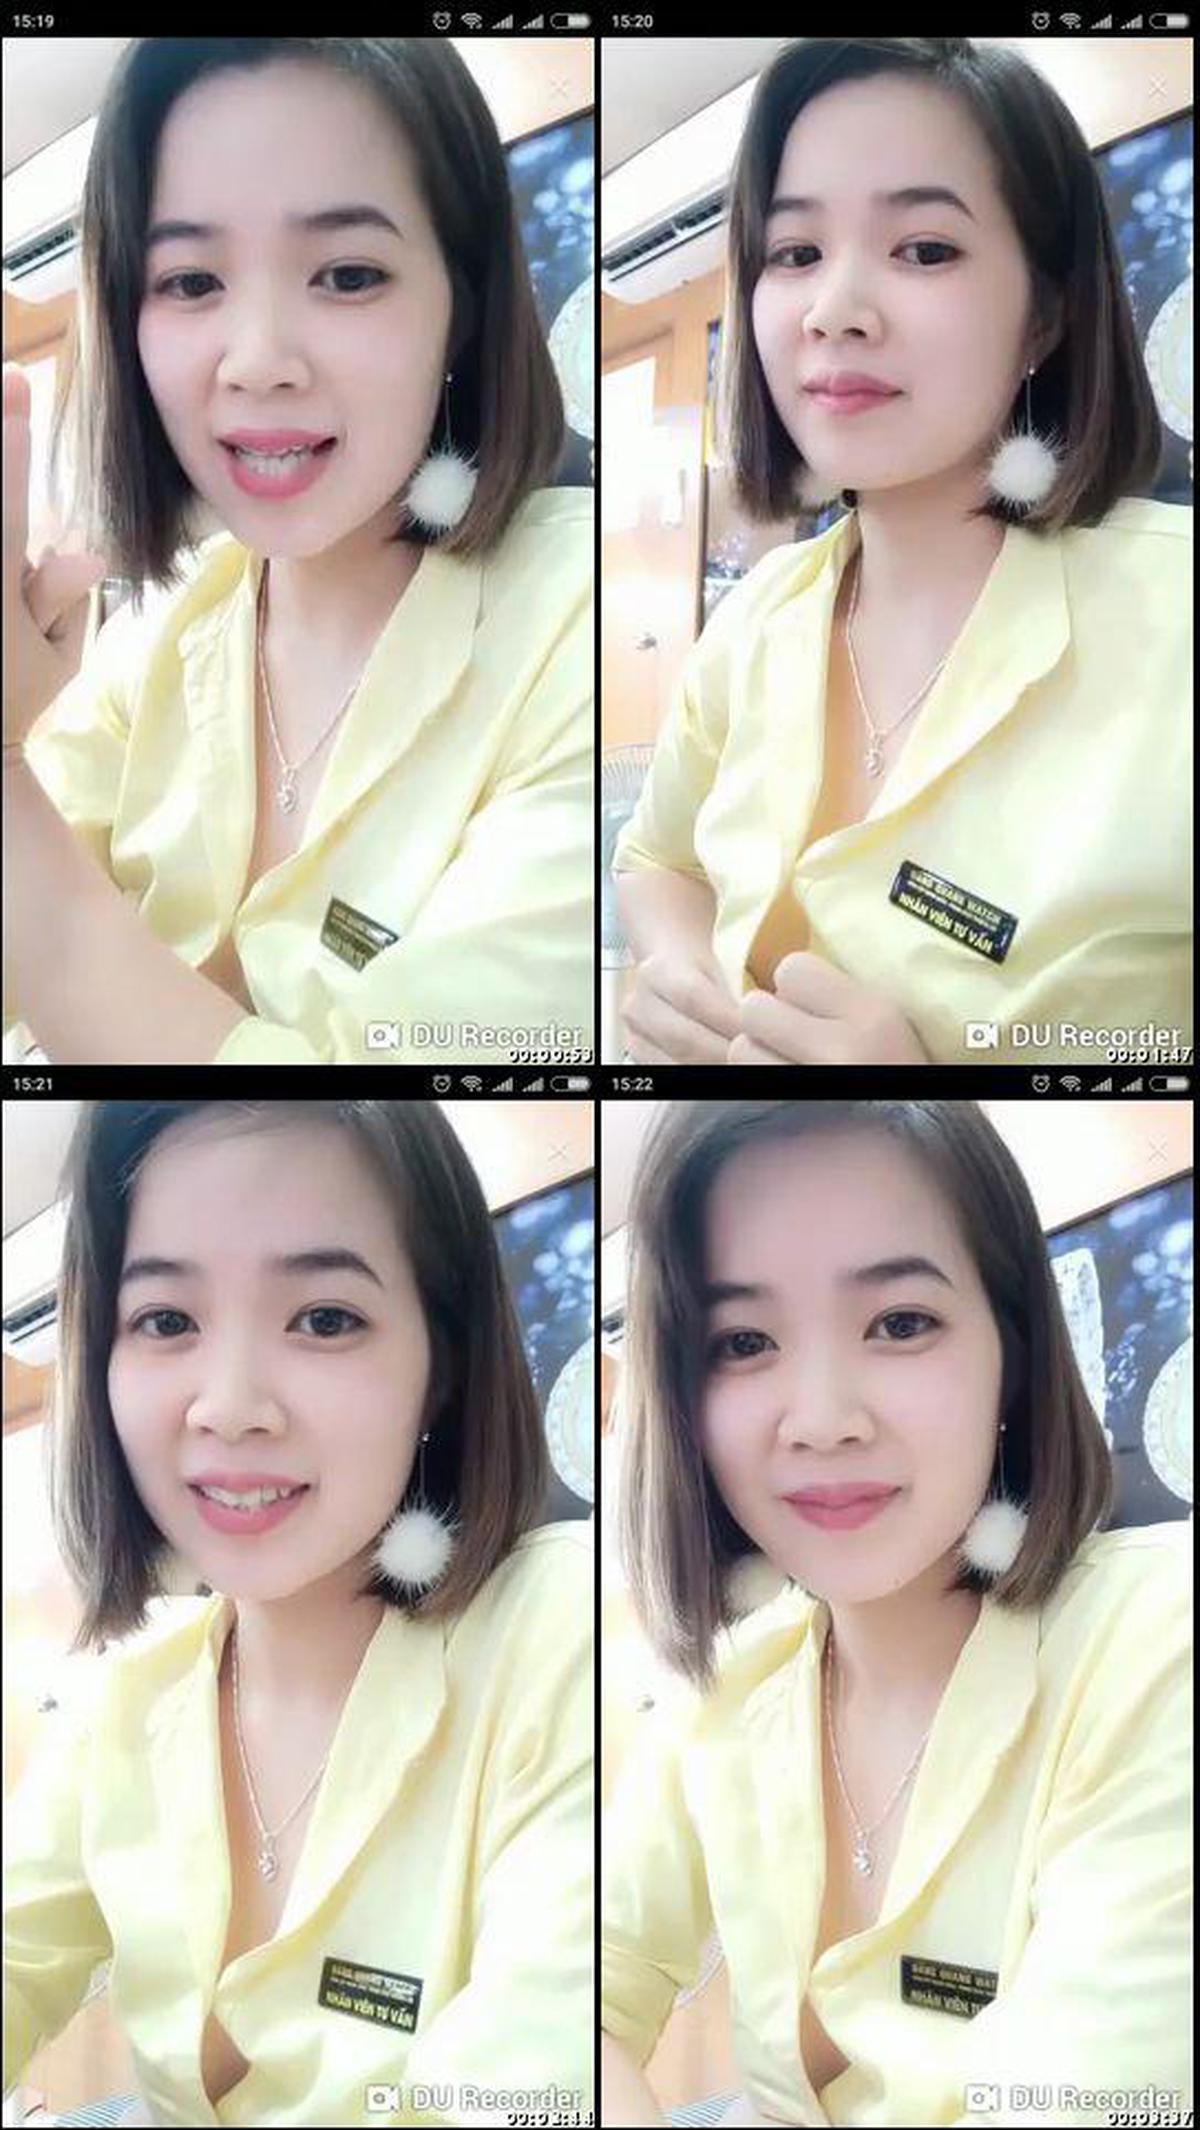 digi-tents_webcam_357 [Nein] Schöne Mädels machen Elektromaona und Pissenlieferung! !! , 18 Jahre alt schwarzes Haar E Cup ☆ Live-Chat